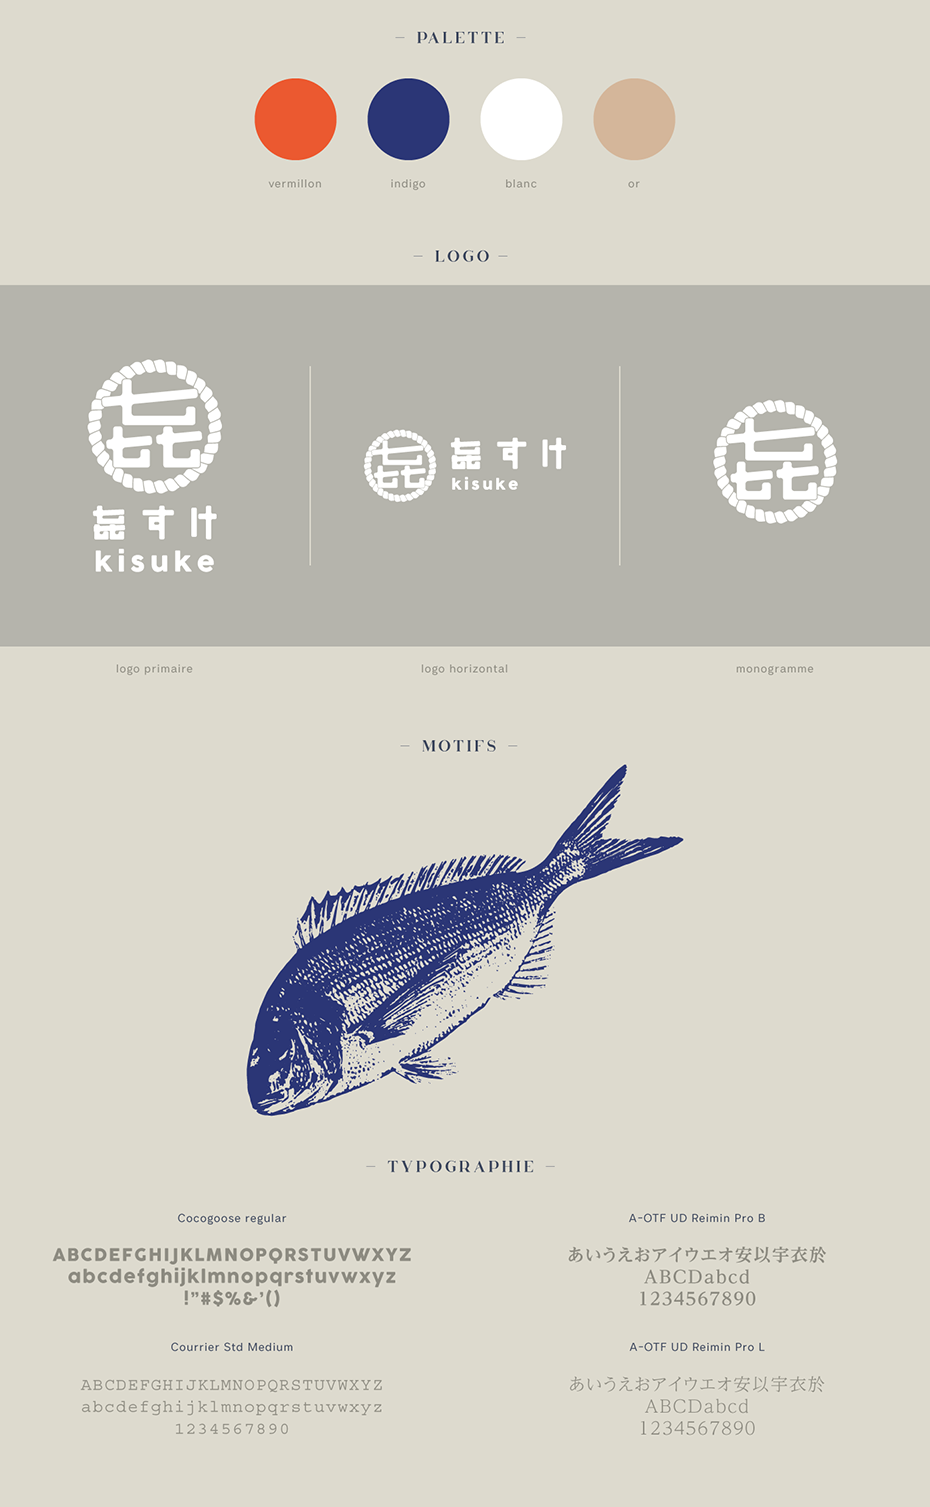 identité visuelle de restaurant japonais : logo, palette, typographie, motifs